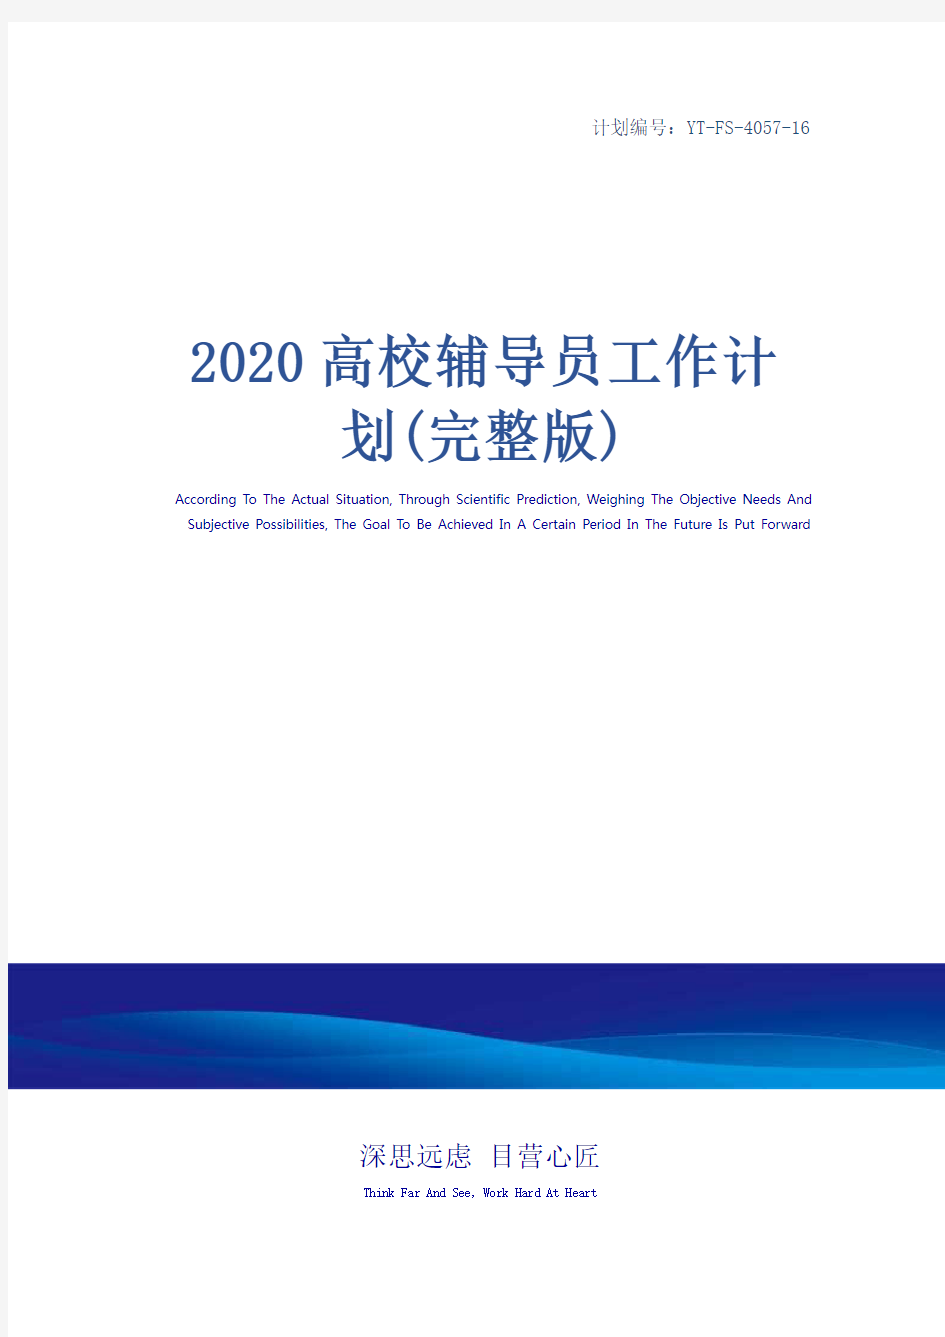 2020高校辅导员工作计划(完整版)